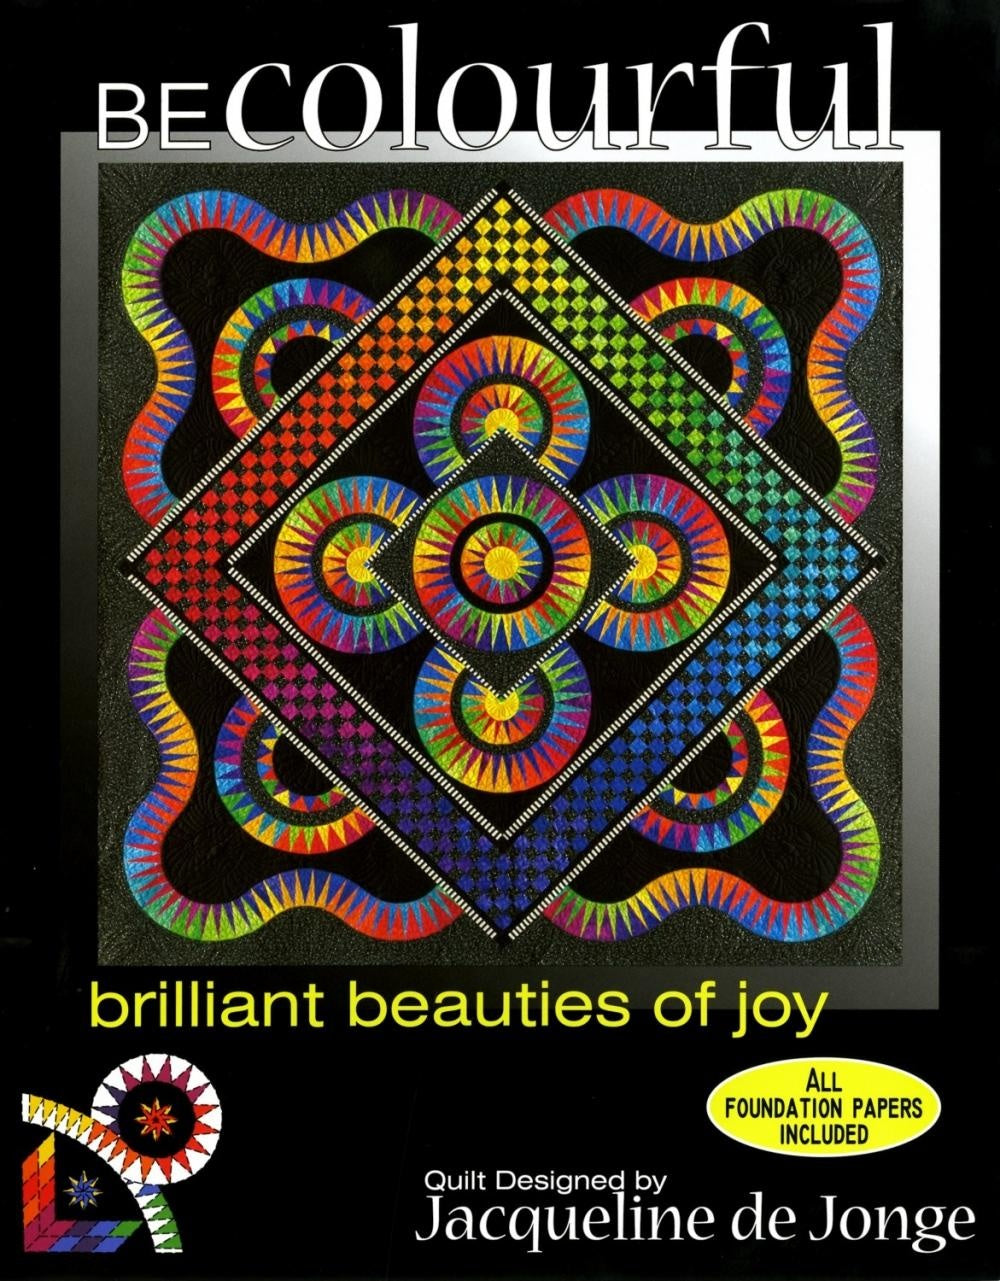 Brilliant Beauties of Joy by Jacqueline de Jonge